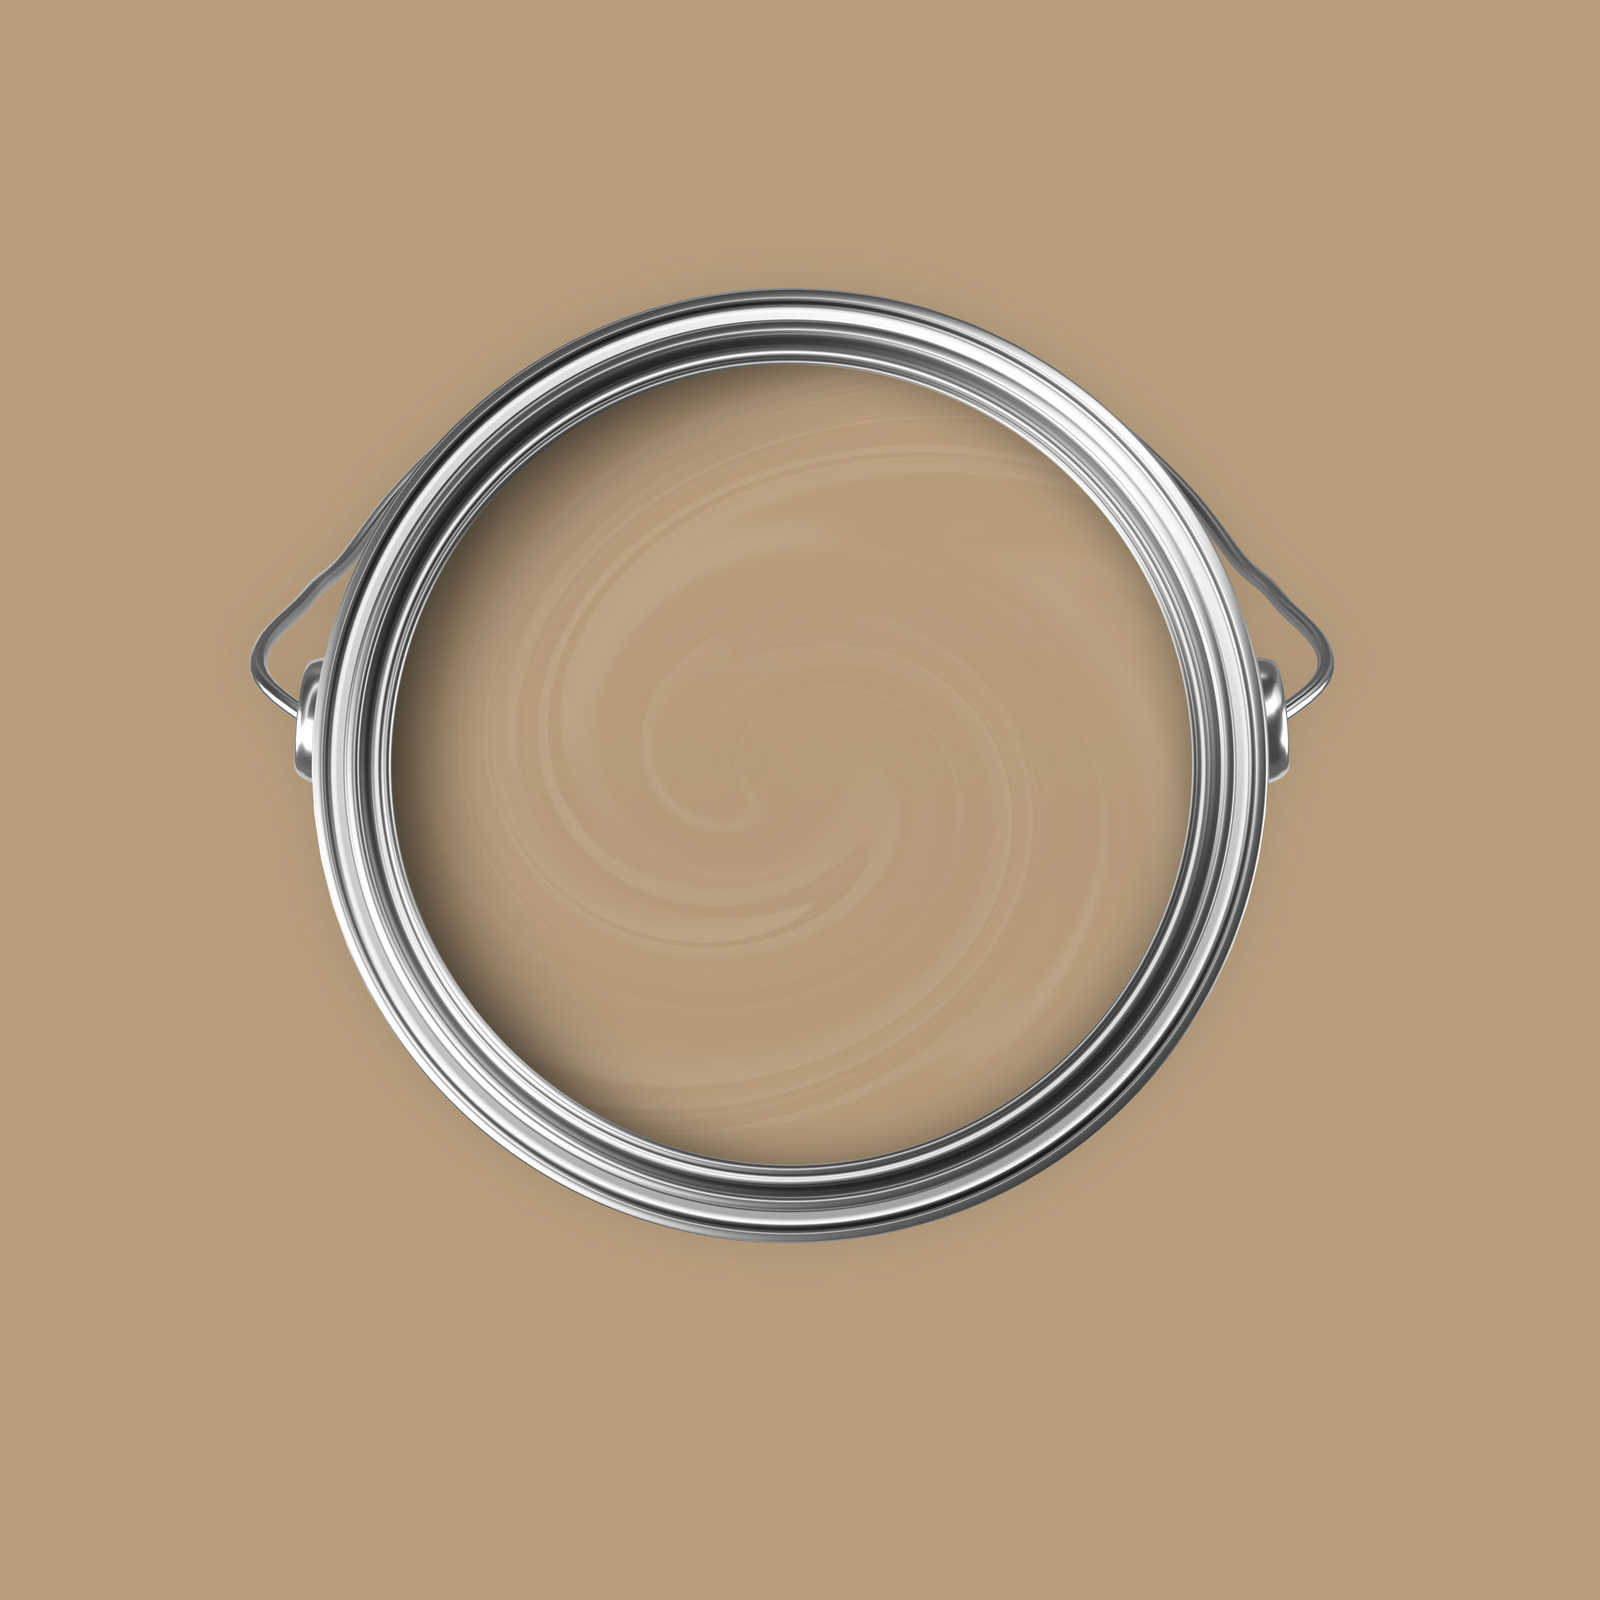             Premium Muurverf Naturel Cappuccino »Essential Earth« NW710 – 5 liter
        